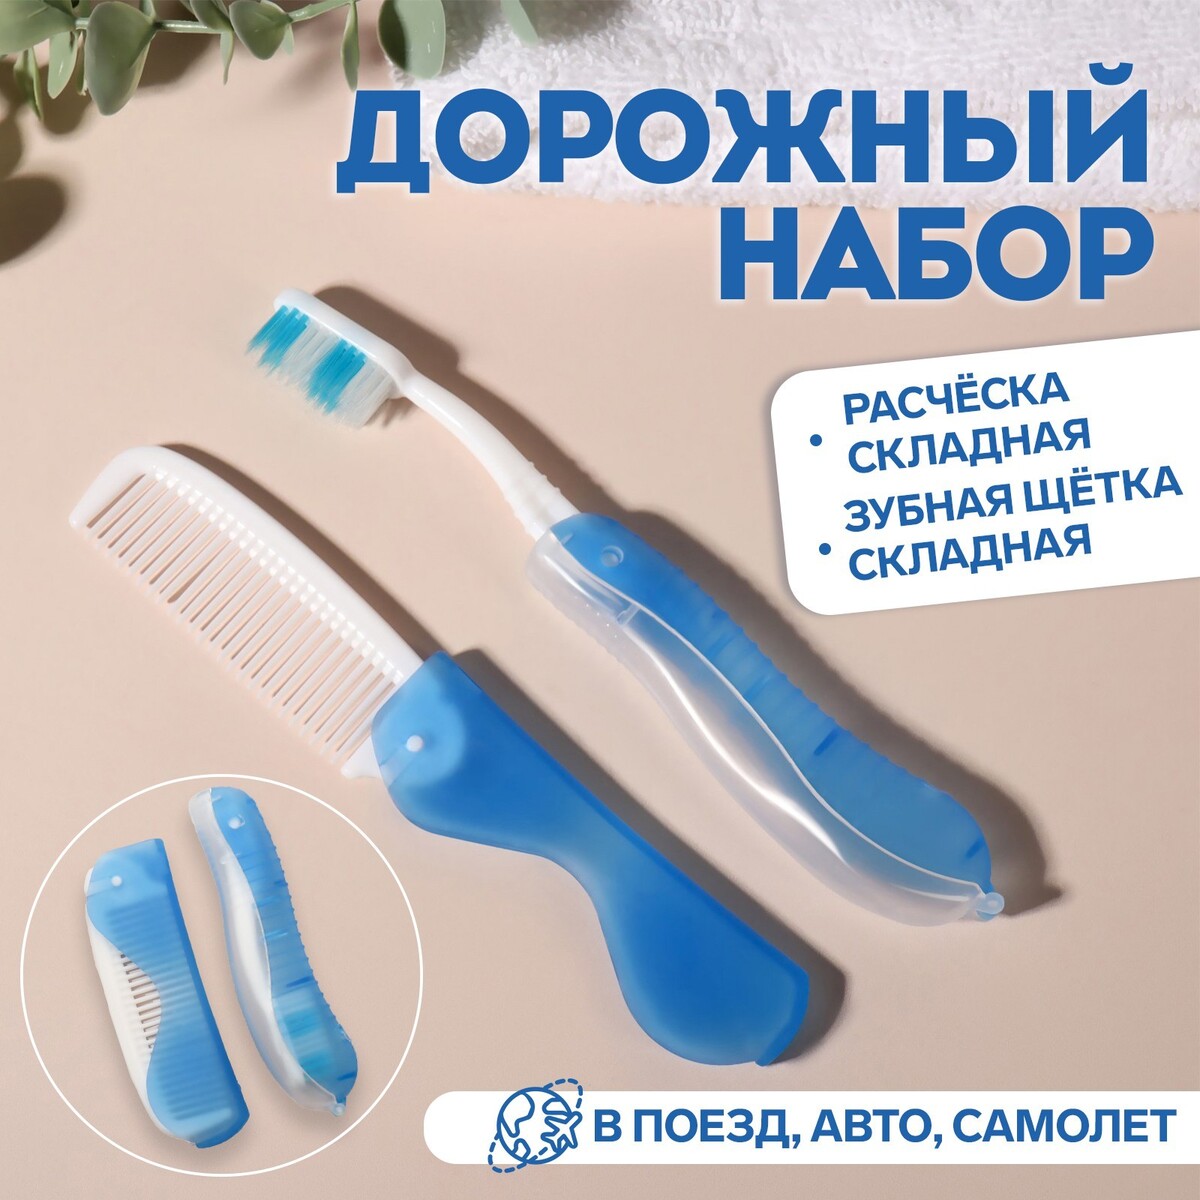 Набор дорожный, 2 предмета: расческа, щетка, цвет белый/голубой зубная паста сплат дорожный набор биокальций зубная щетка